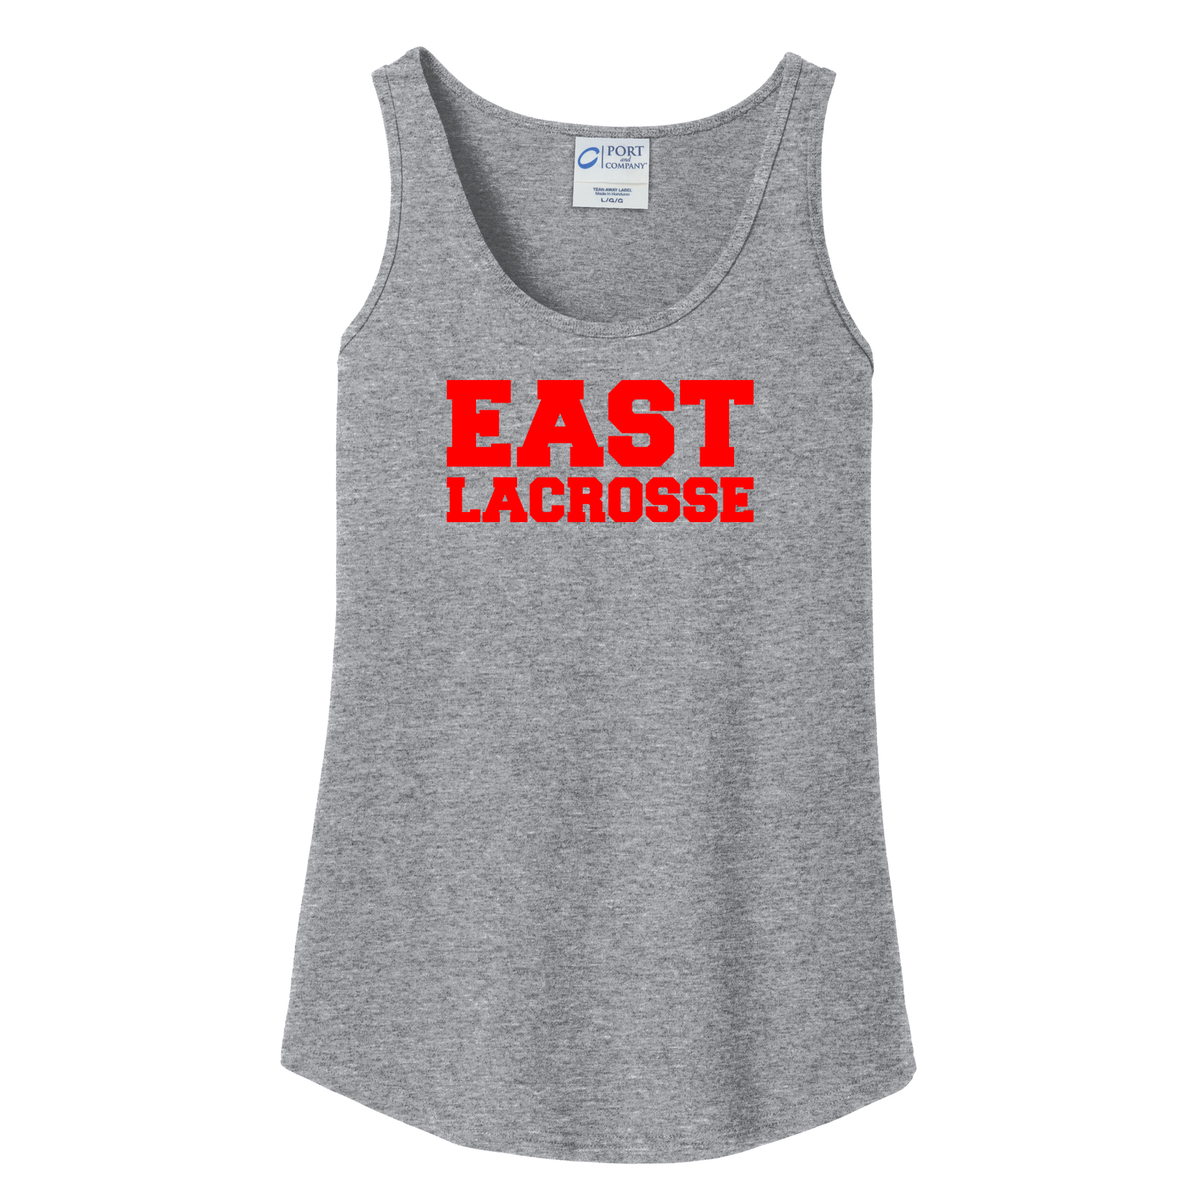 East Lacrosse Women's Tank Top